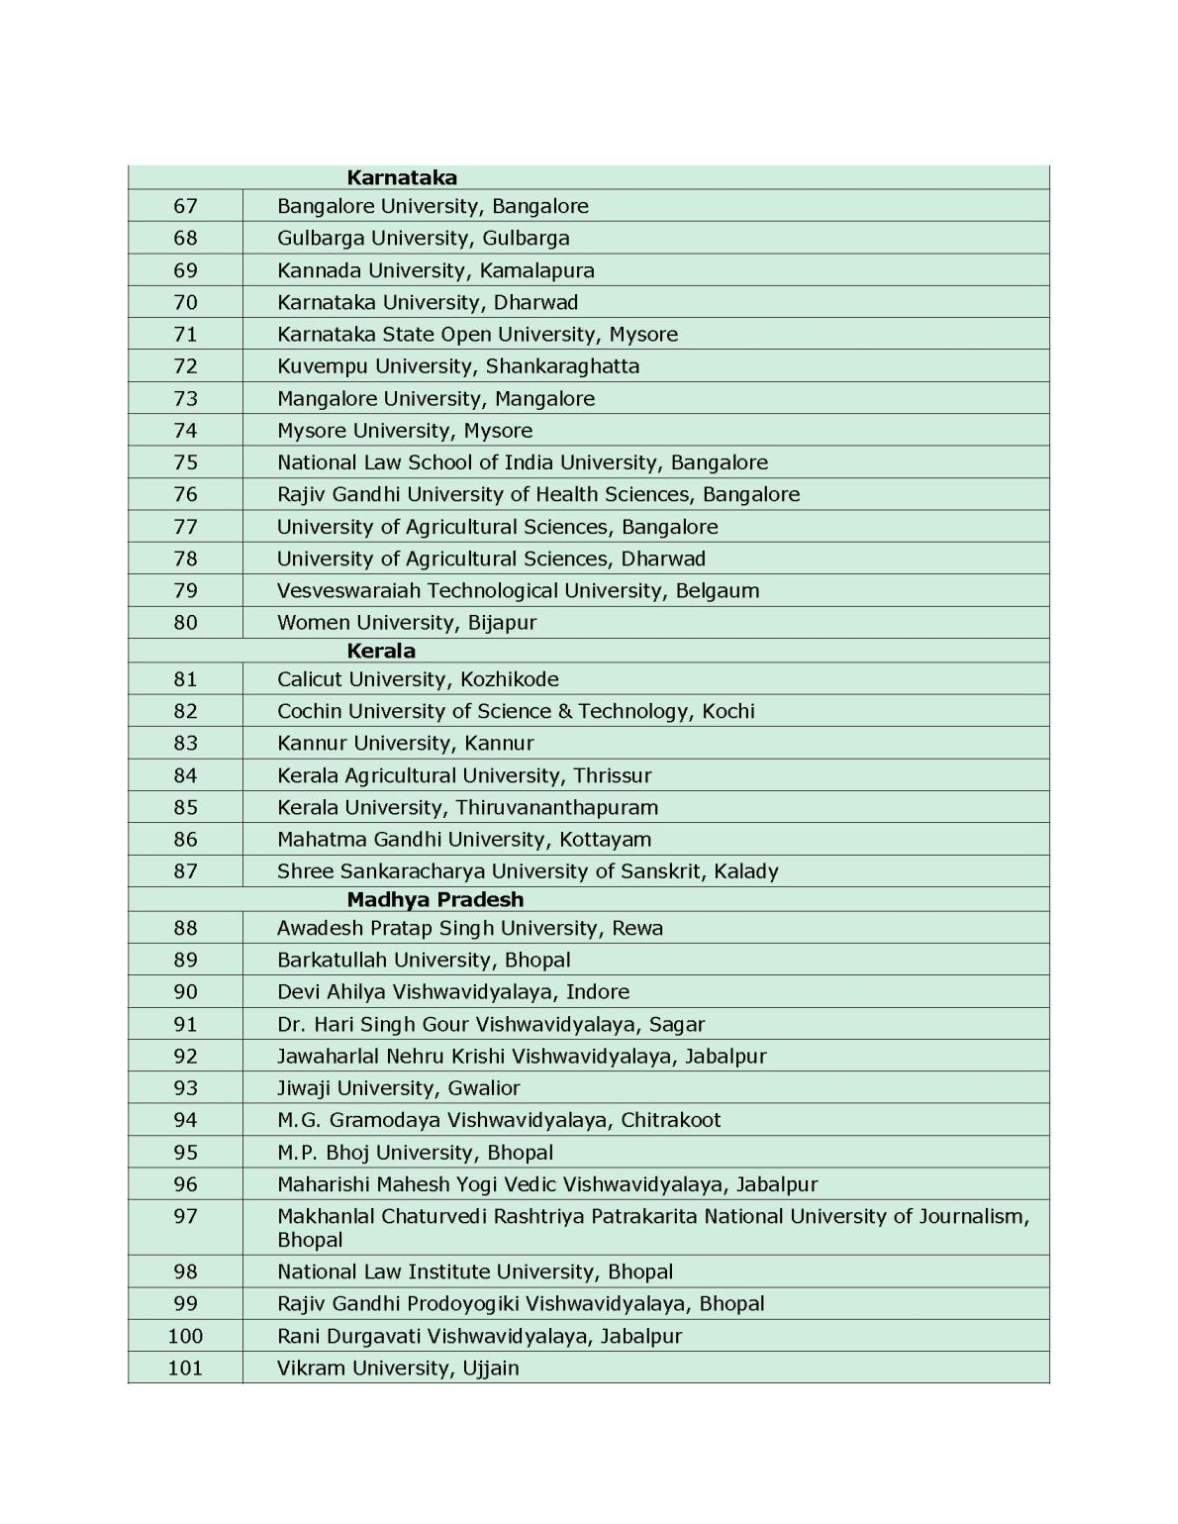 List of Universities UGC Recognized Universities in India - 2021 2022